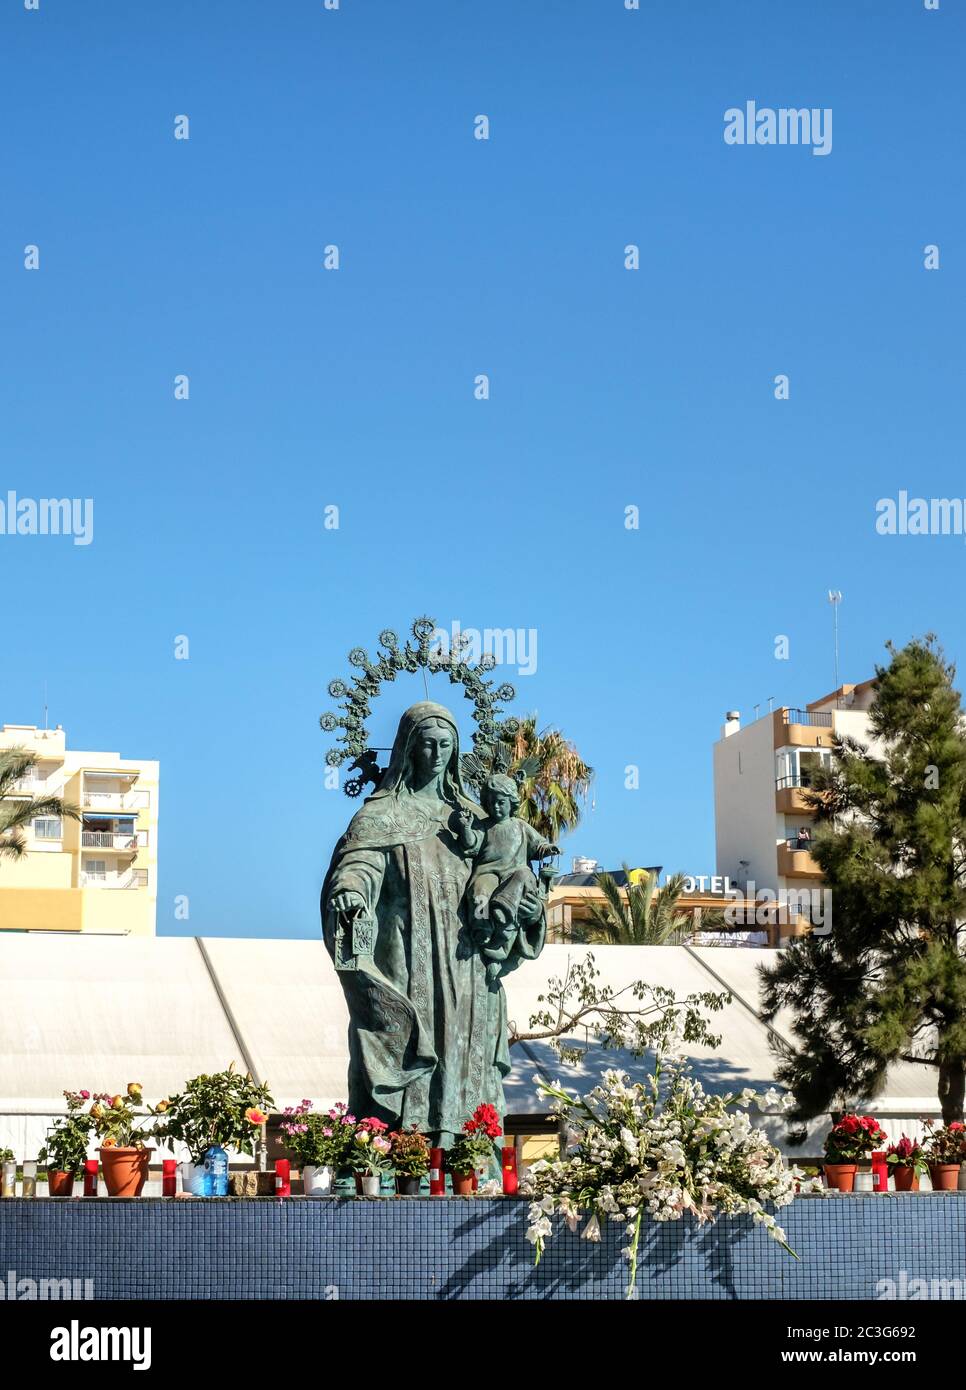 Torre del Mar, Spagna - 29 luglio 2018 statua di nostra Signora del Carmen con candele sul bordo nel centro della città di Tore del Mar, Malaga regione, Spagna Foto Stock